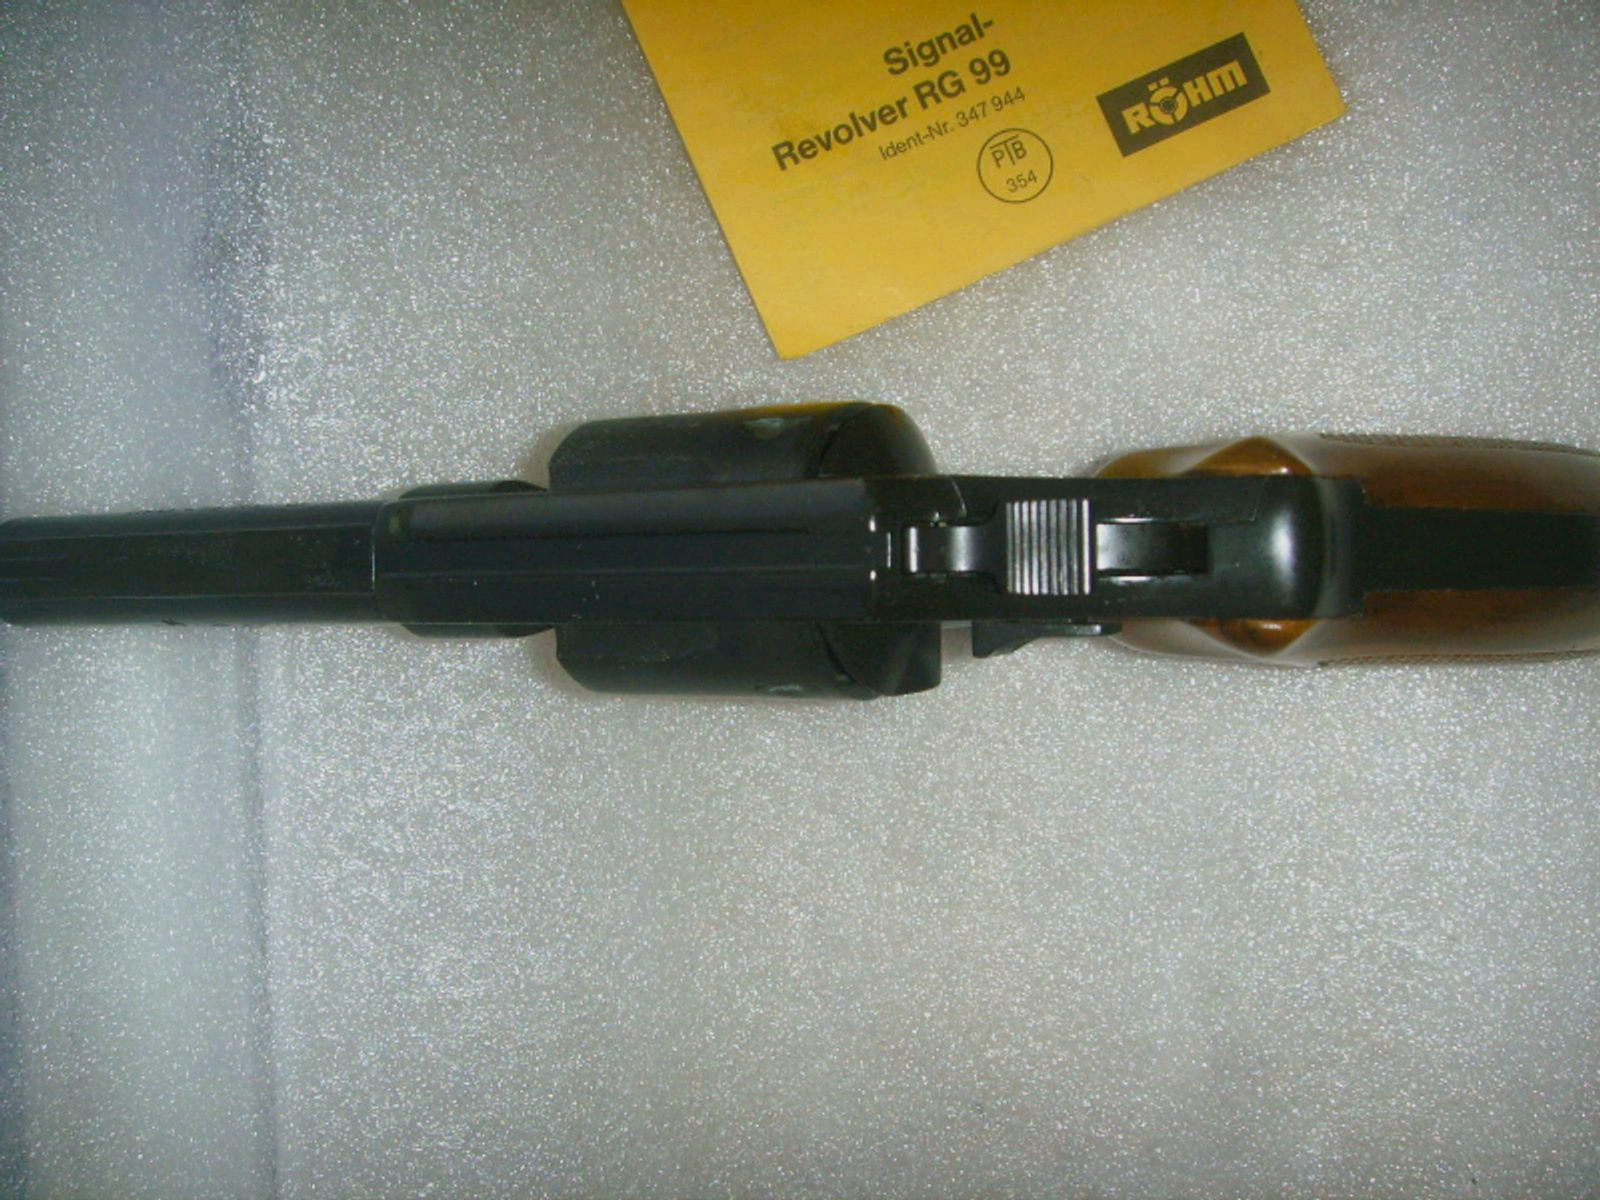 4-Revolver Röhm RG 99 m. orig. Holzgriffschalen * erste PTB 354 = nahezu offener Lauf